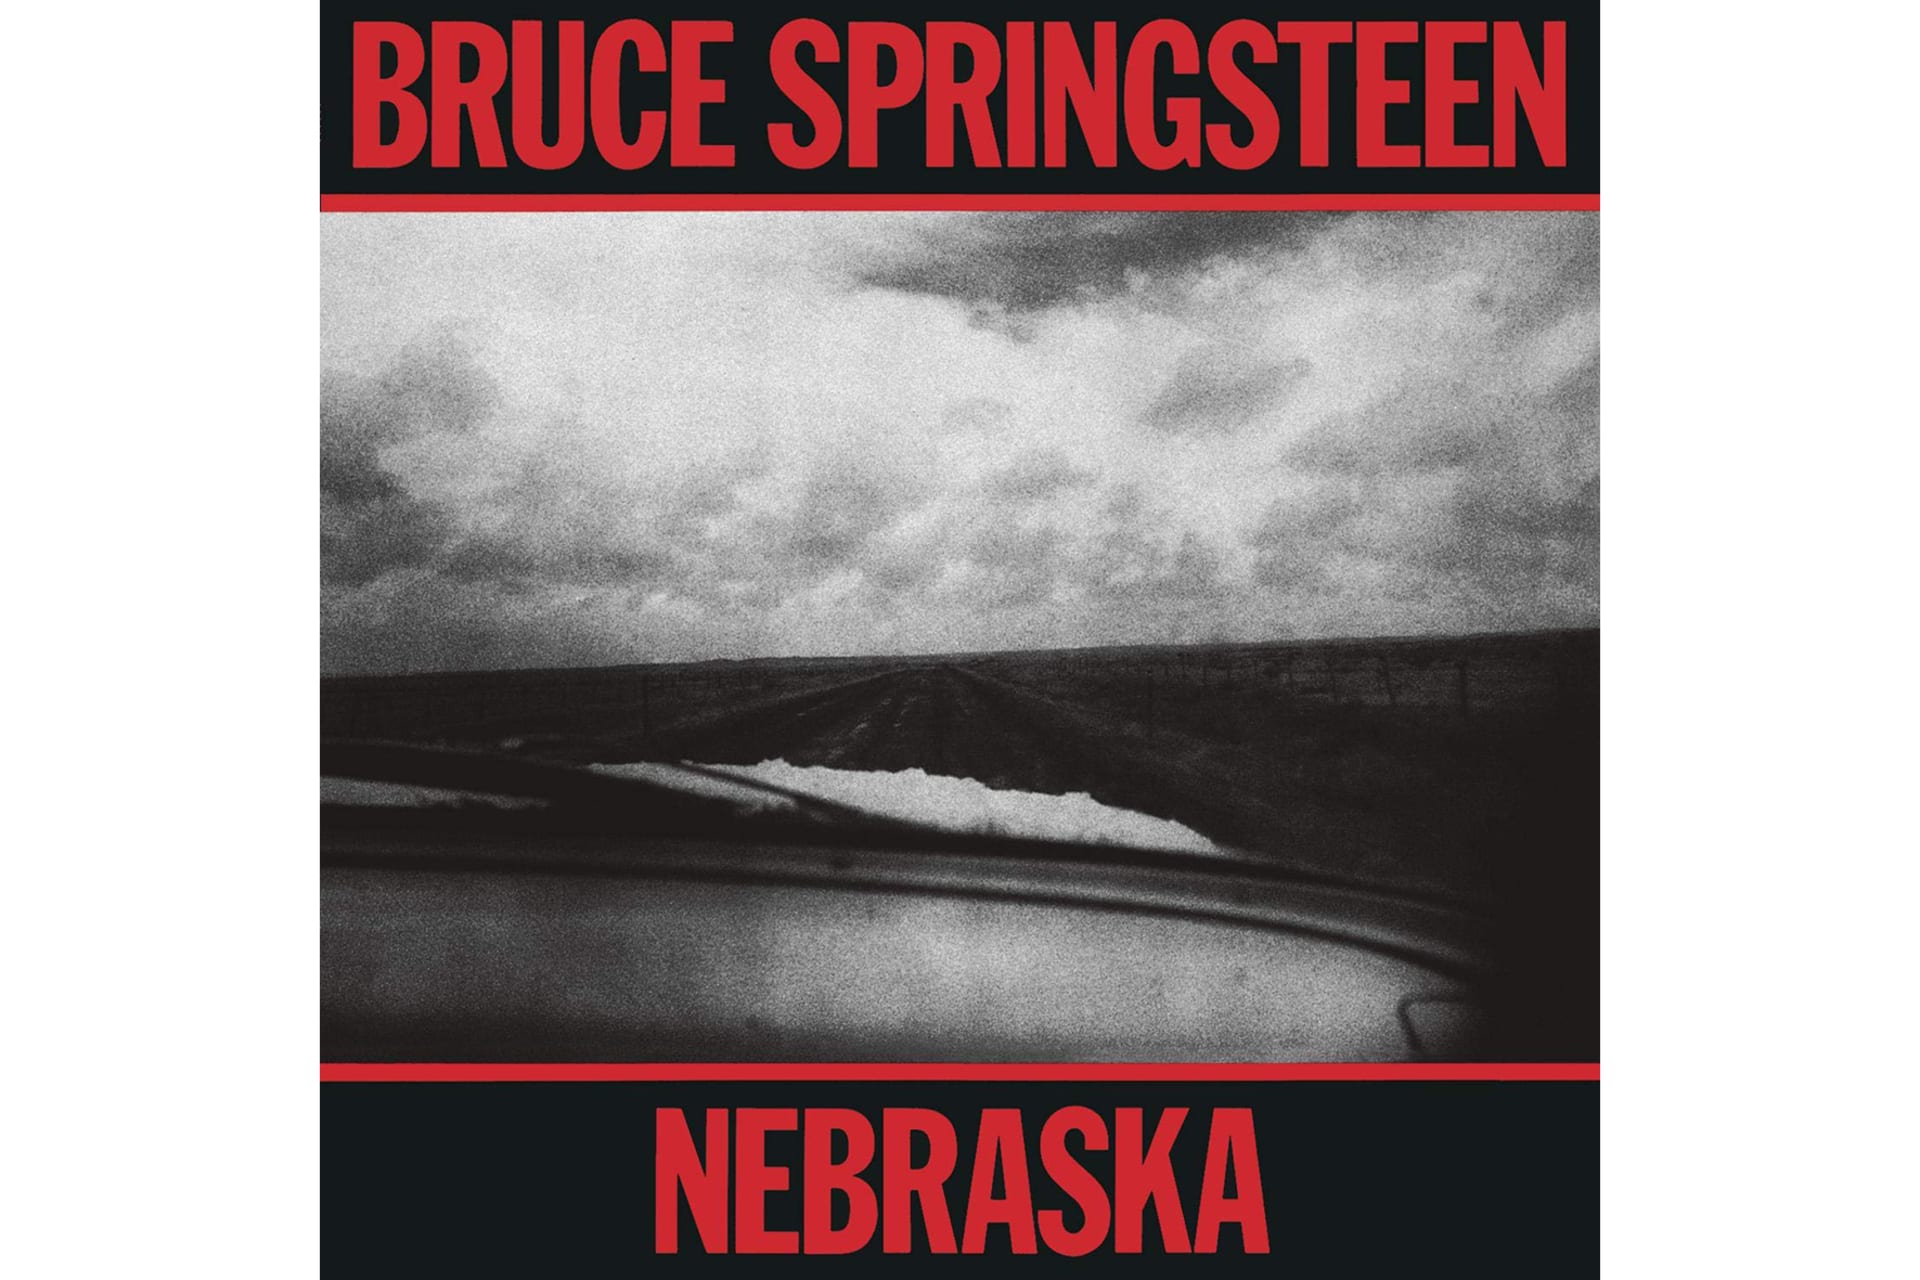 Původně měl Springsteen v plánu dát albu konečnou podobu za přispění E Street Bandu, s producentem Jonem Laudauem se ale shodli na tom, že by nebylo v silách kapely udržet syrovost a bezprostřednost doma vzniklých nahrávek.